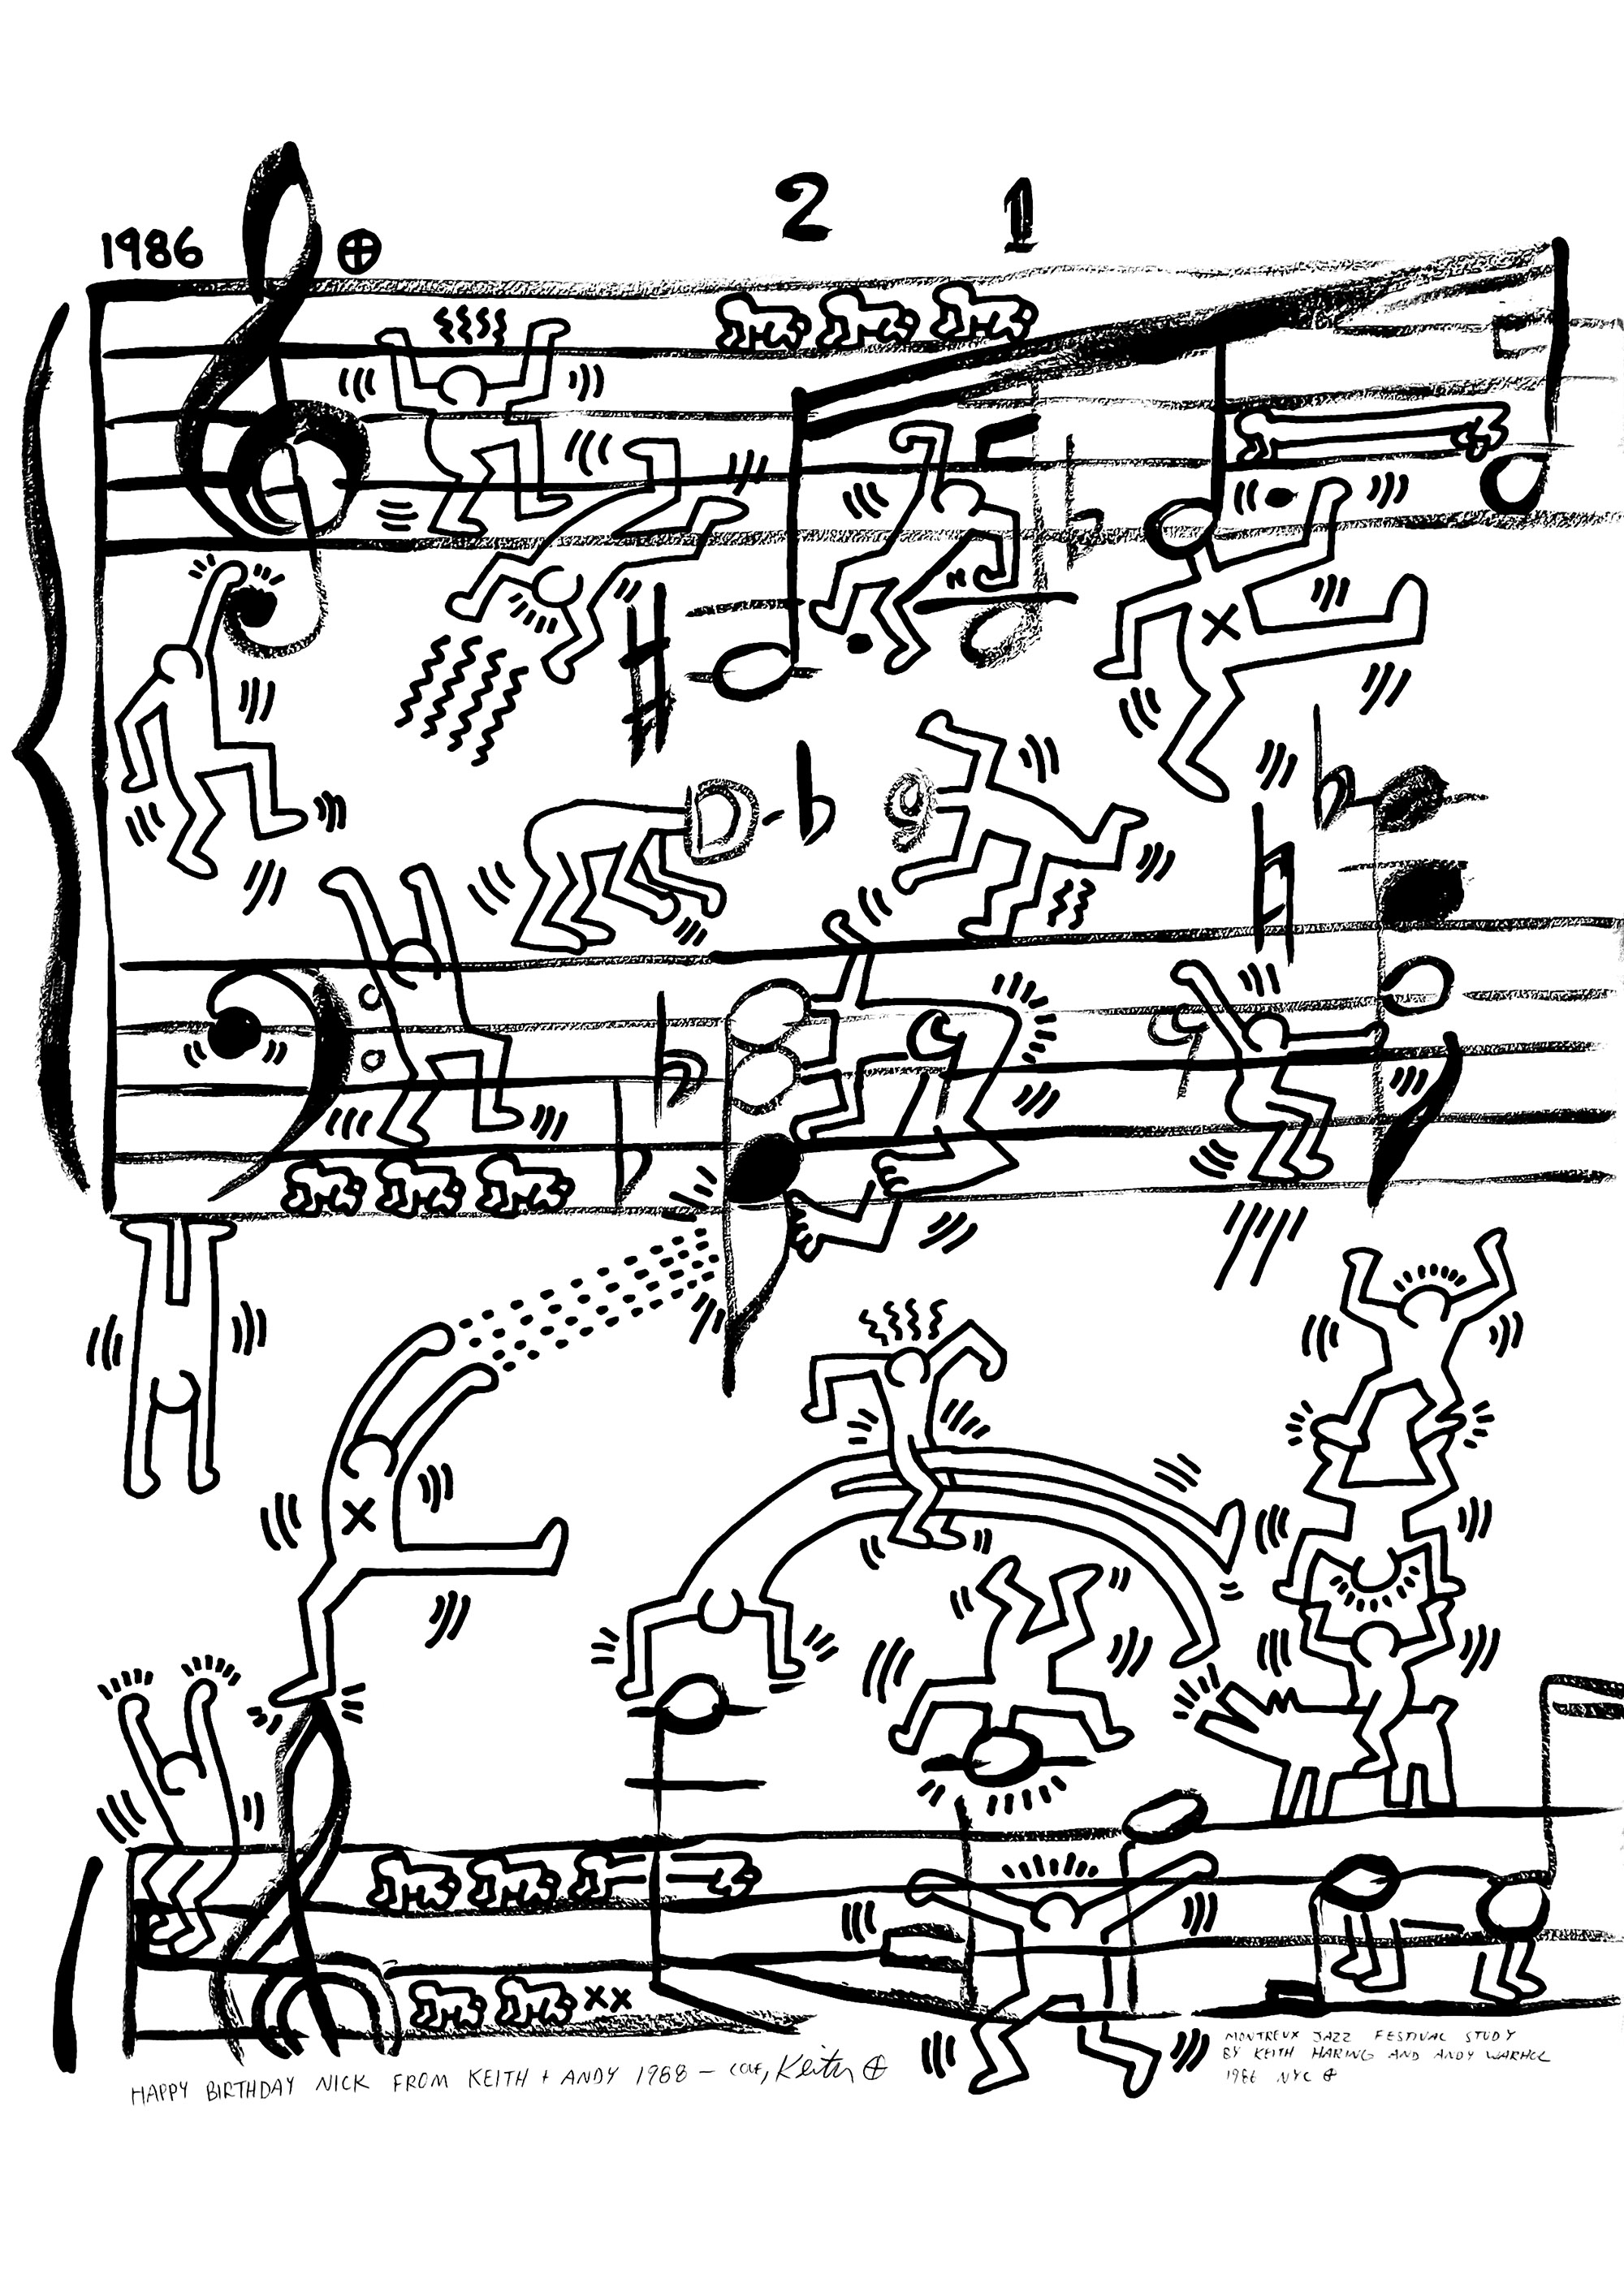 Projeto de cartaz para o Festival de Jazz de Montreux de Andy Warhol e Keith Haring, 1986. A amizade de Keith Haring com Andy Warhol teve um impacto profundo no seu trabalho. Após o seu primeiro encontro na Galeria Tony Shafrazi em 1984, Keith Haring introduziu Andy Warhol na cena criativa de Manhattan, um ambiente que continuou a inspirar o pai fundador da Pop Art ao longo da sua carreira.